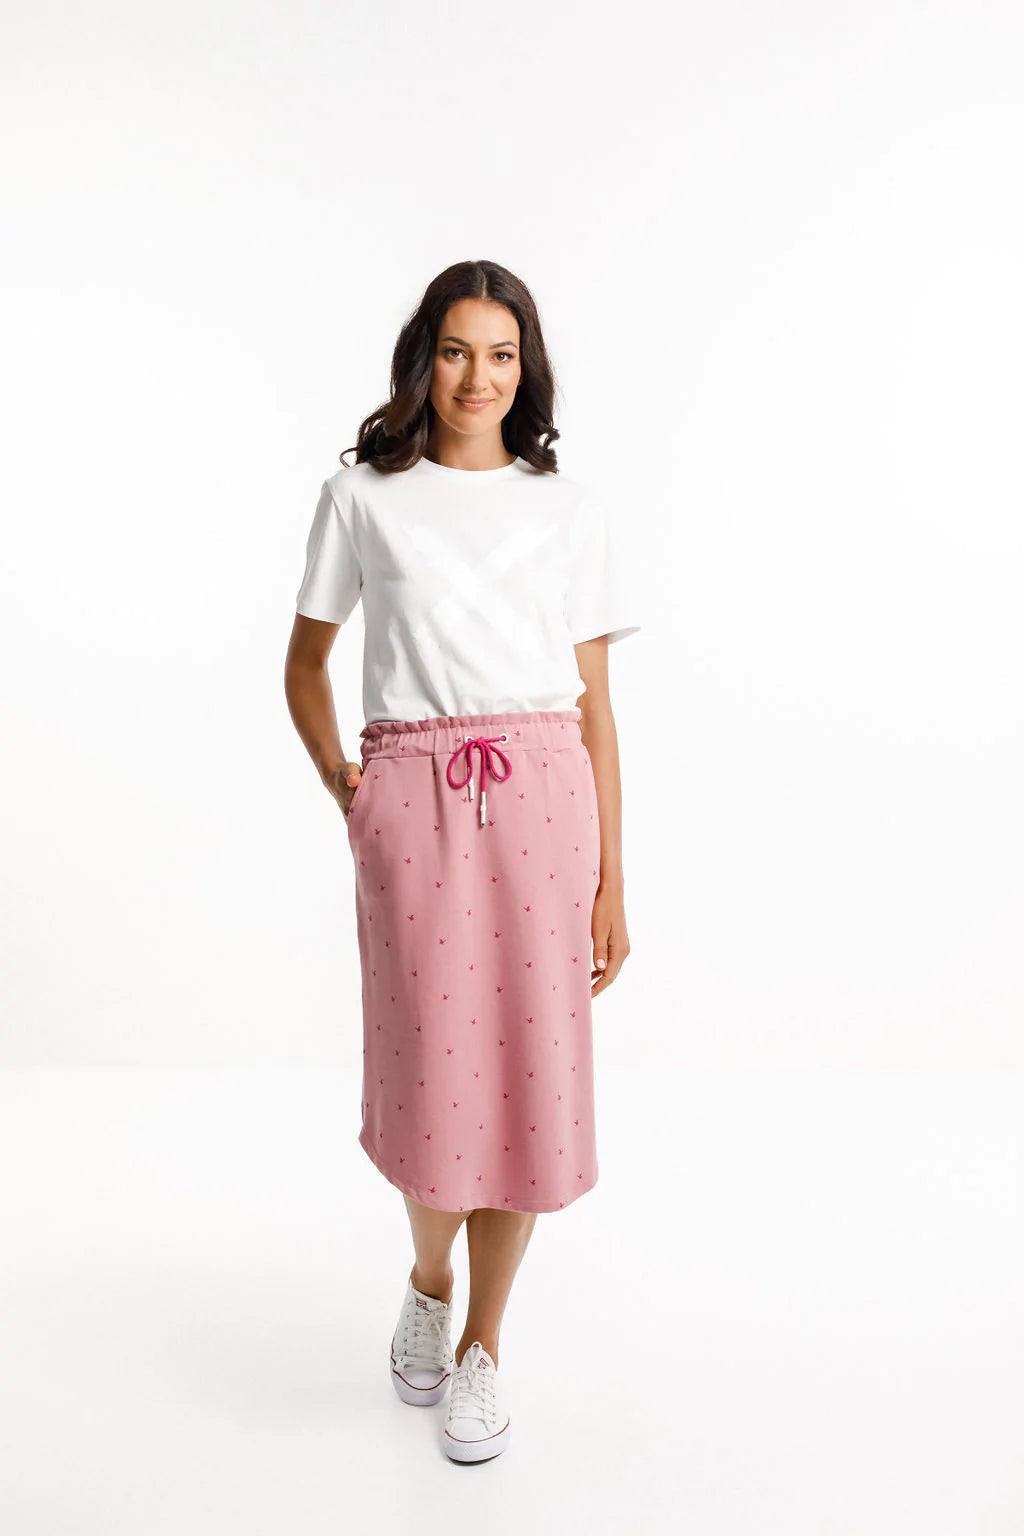 Midi Skirt - HOME LEE Skirt 8 10 12 14 16 Rose Bud with White 